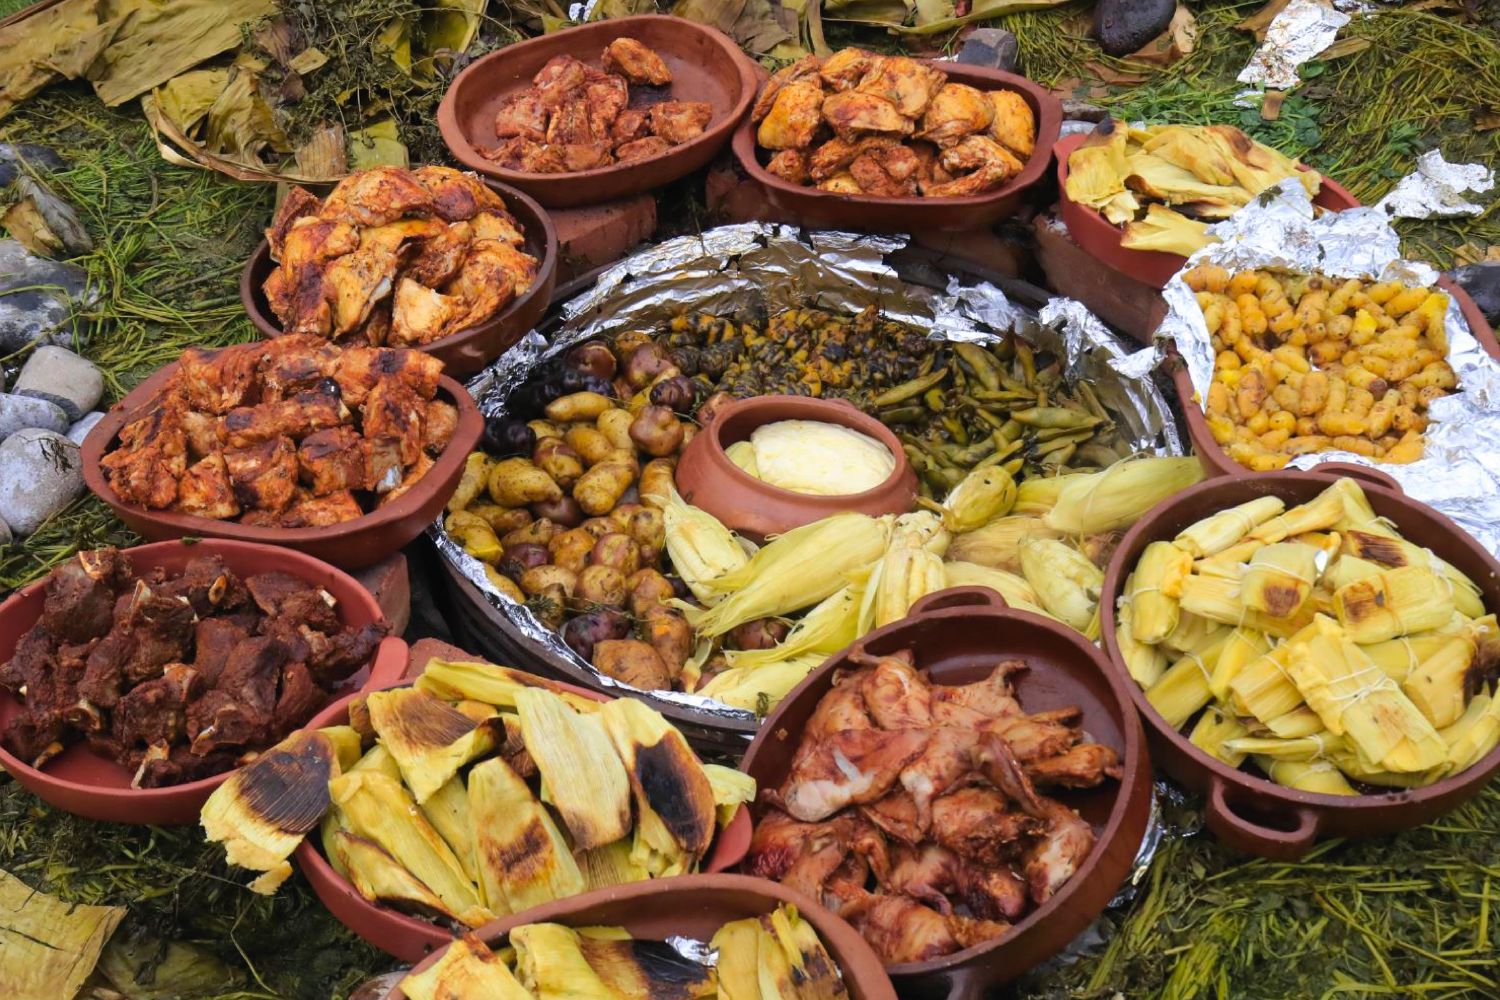 Andean cuisine